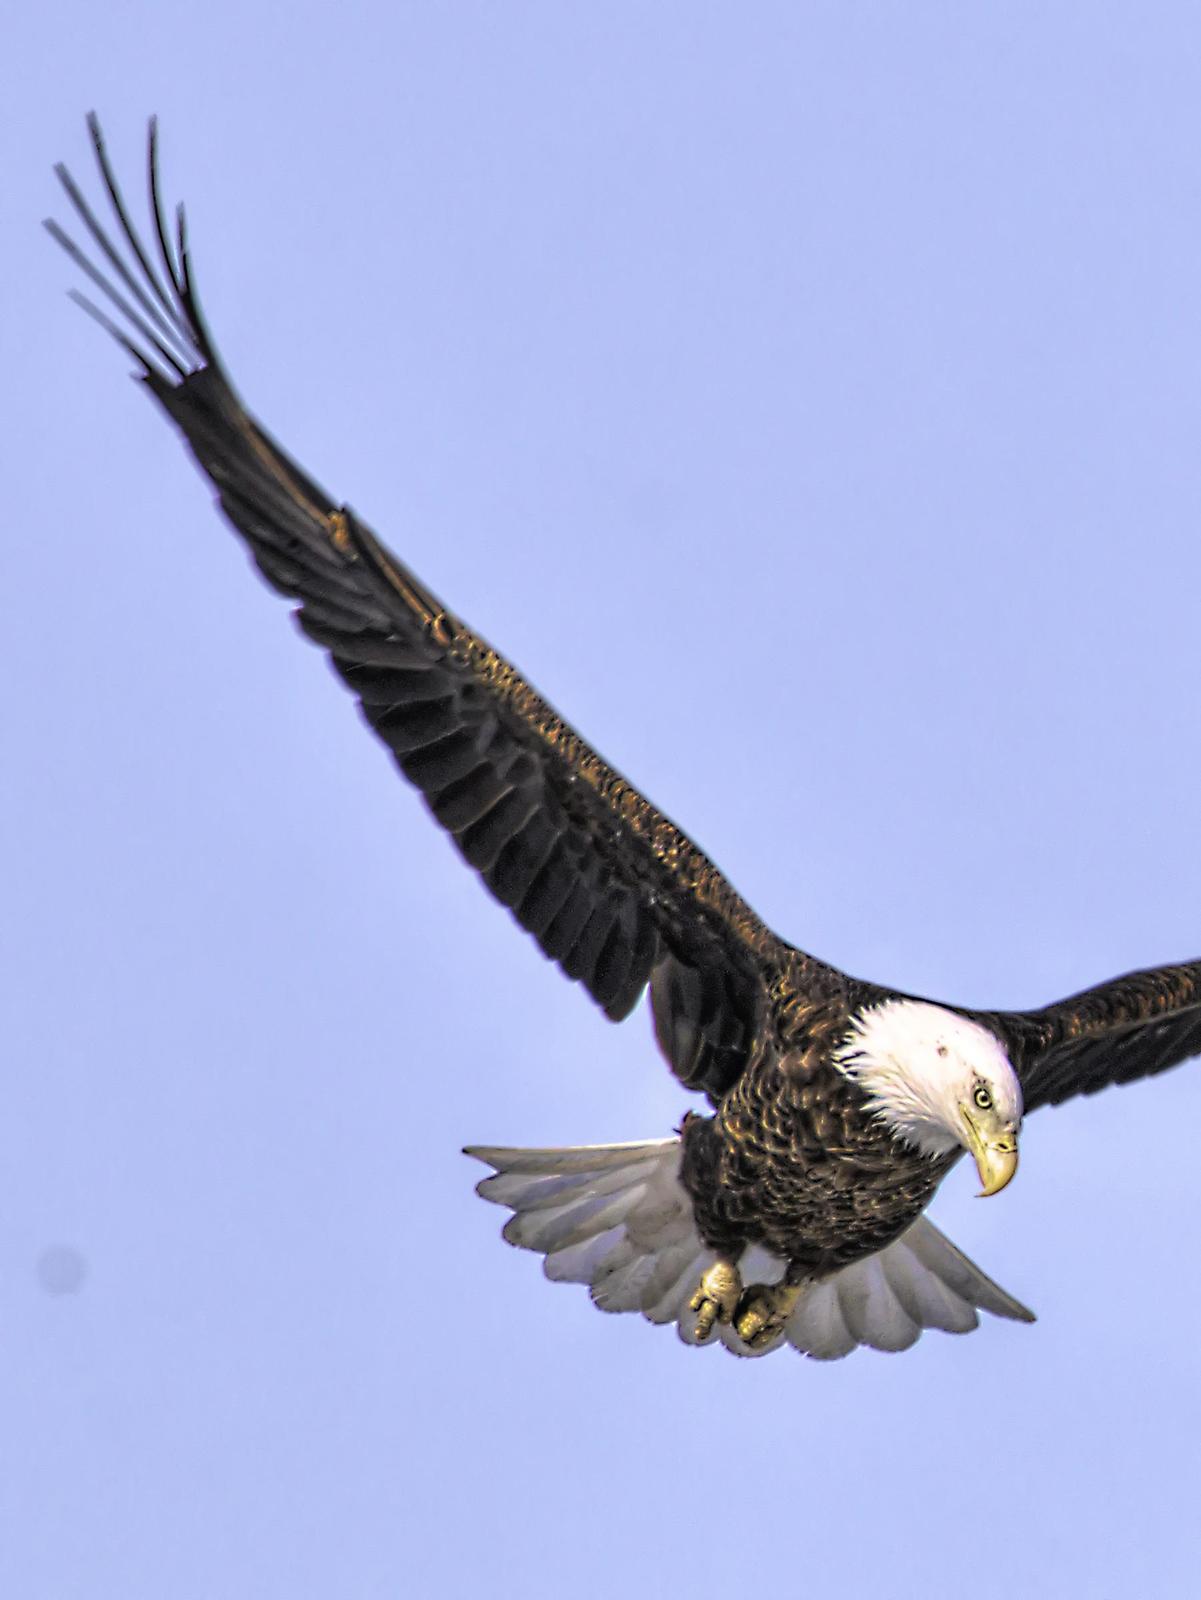 Bald Eagle Photo by Dan Tallman